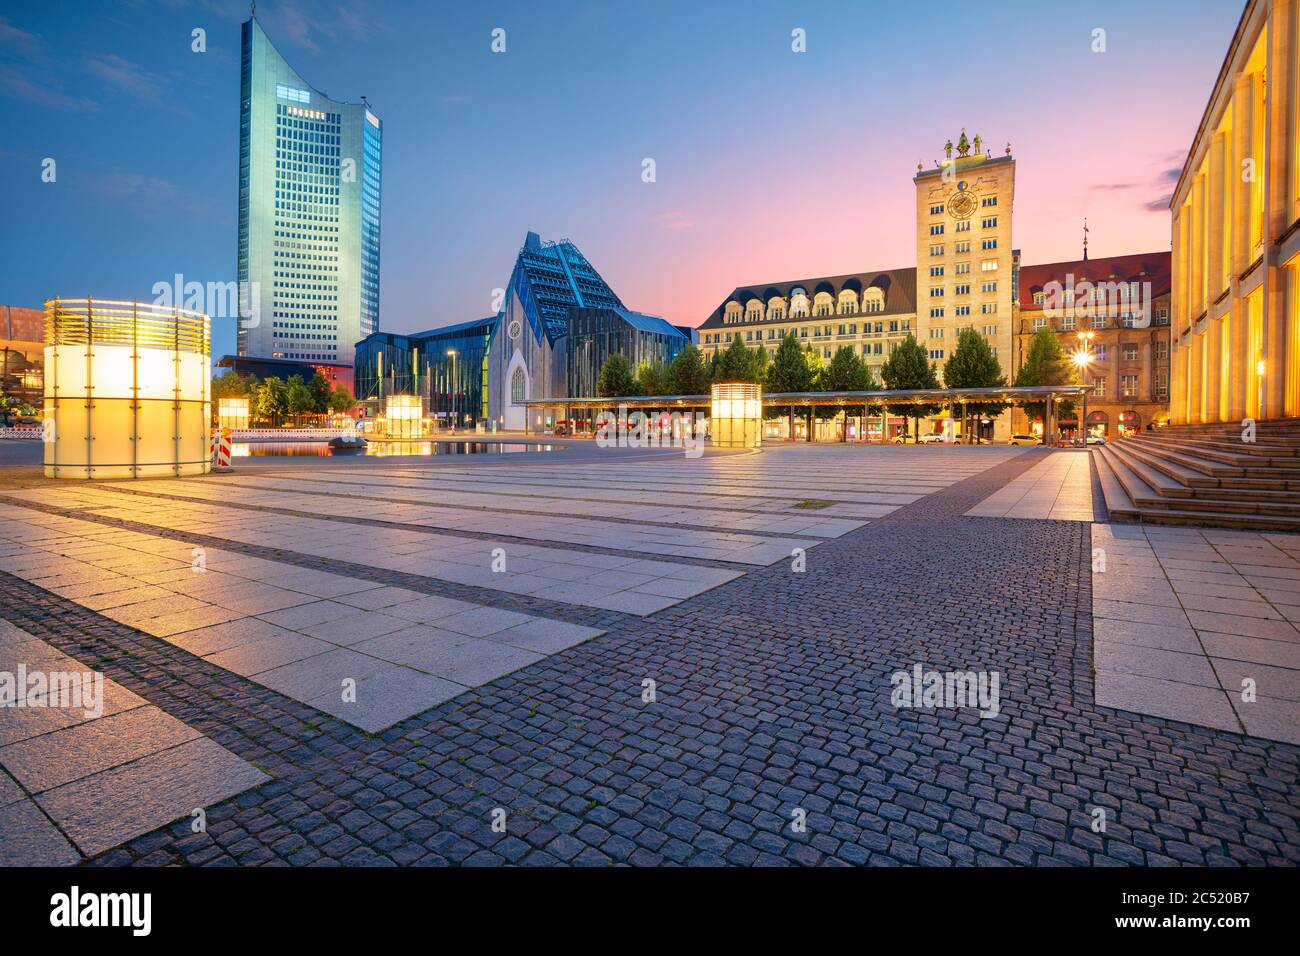 Lipsia, Germania. Immagine del paesaggio urbano del centro di Lipsia durante il tramonto. Foto Stock